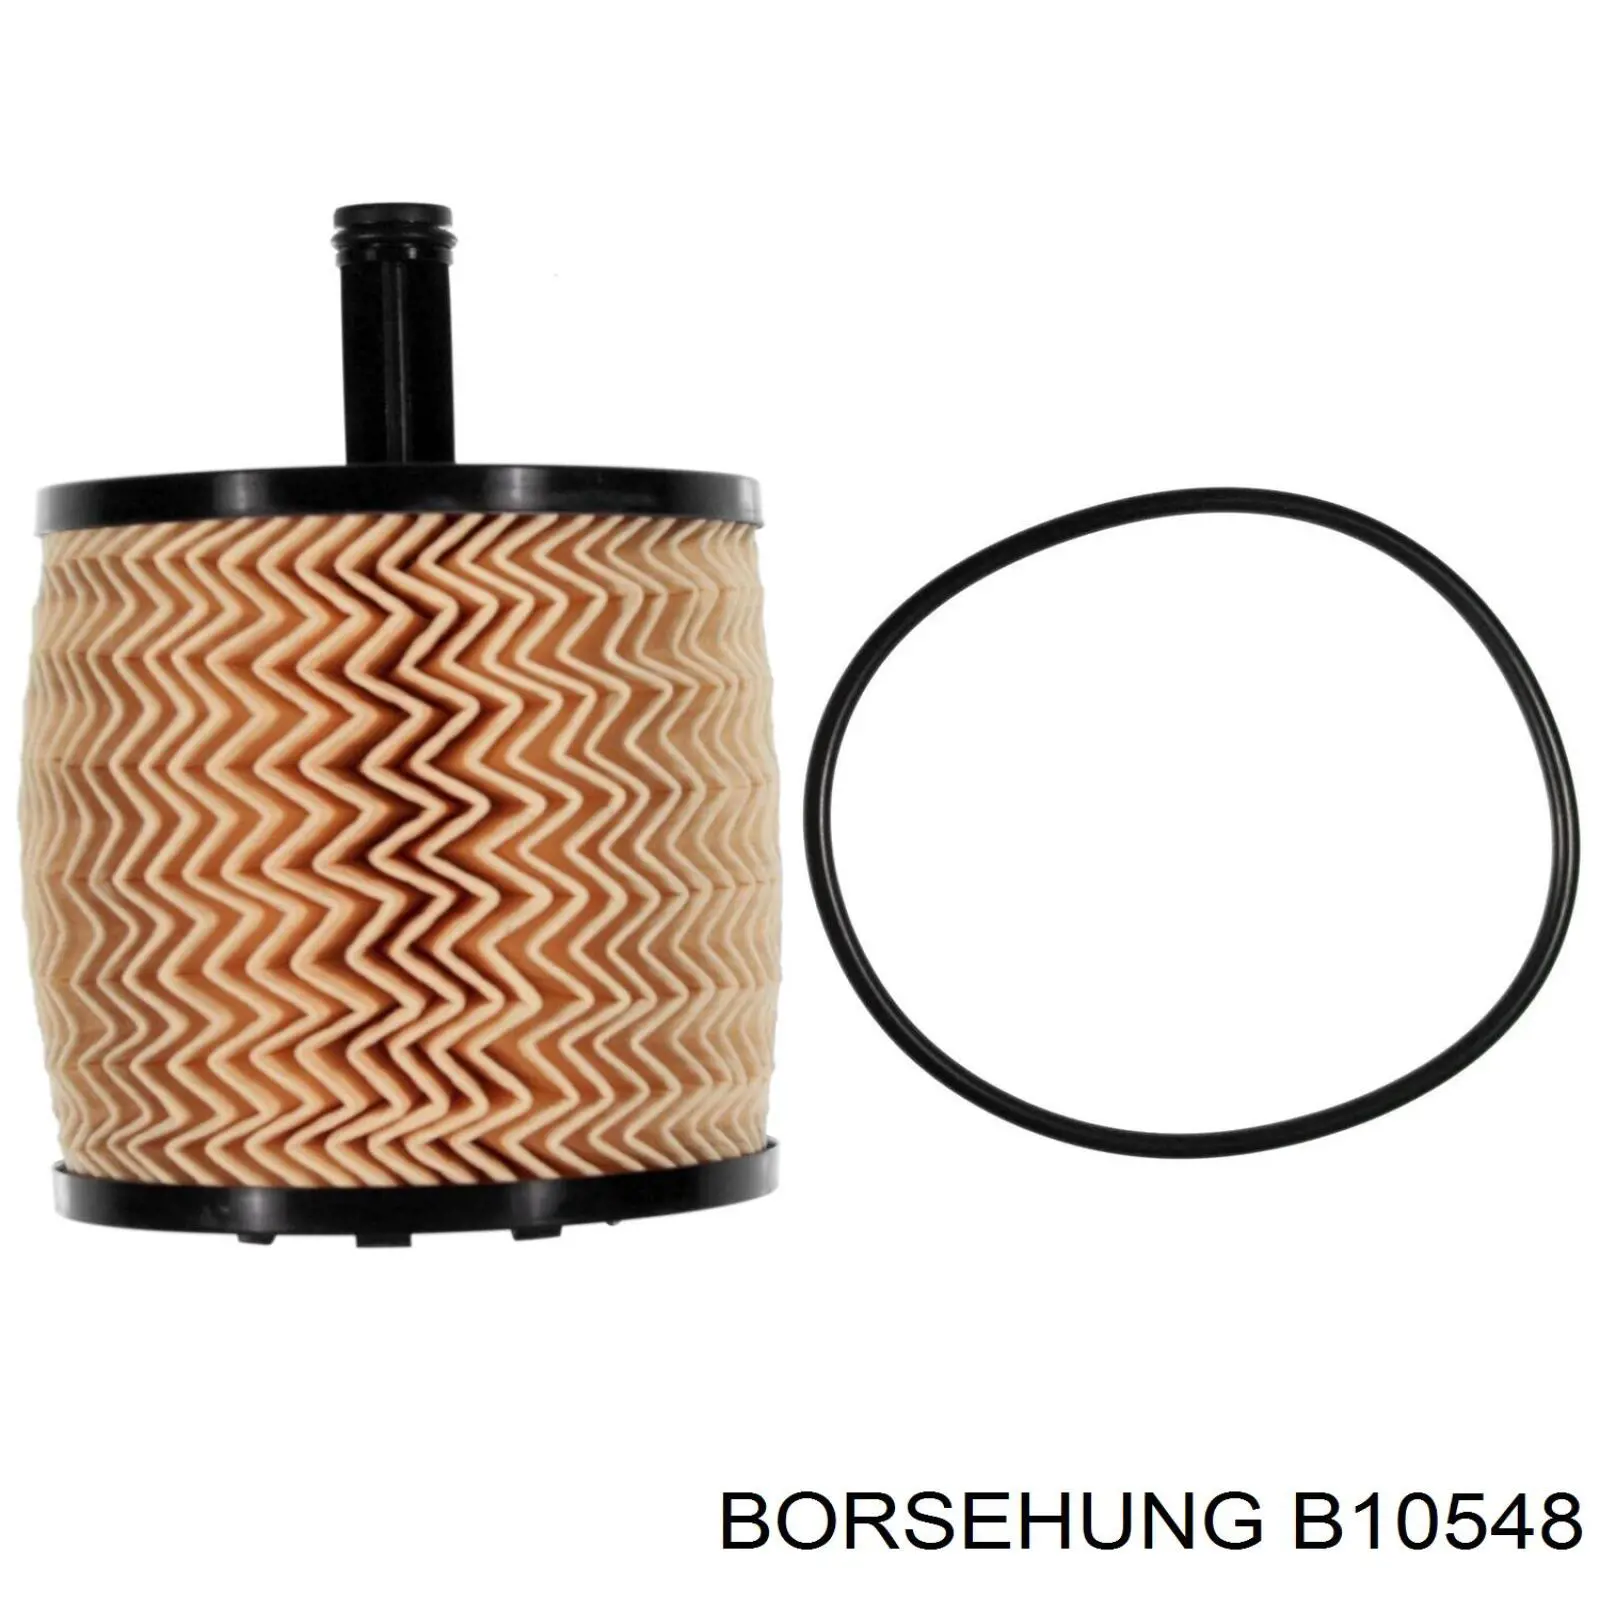 B10548 Borsehung filtro de aceite